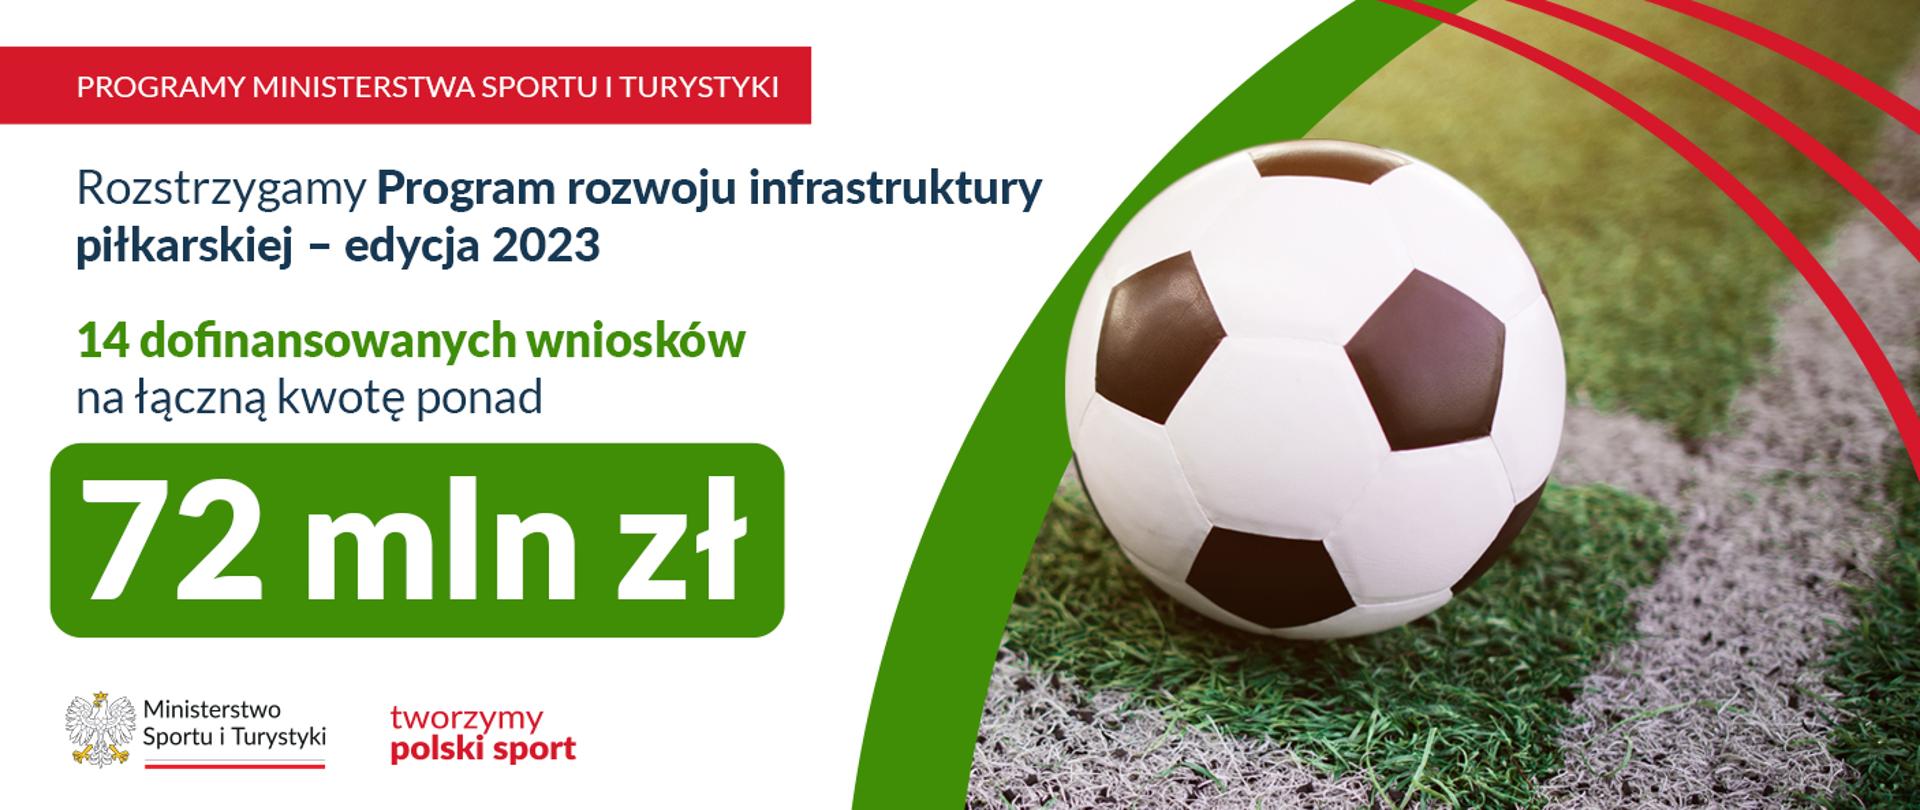 Piłka nożna na zielonej murawie oraz napis rozstrzygamy program rozwoju infrastruktury piłkarskiej - edycja 2023